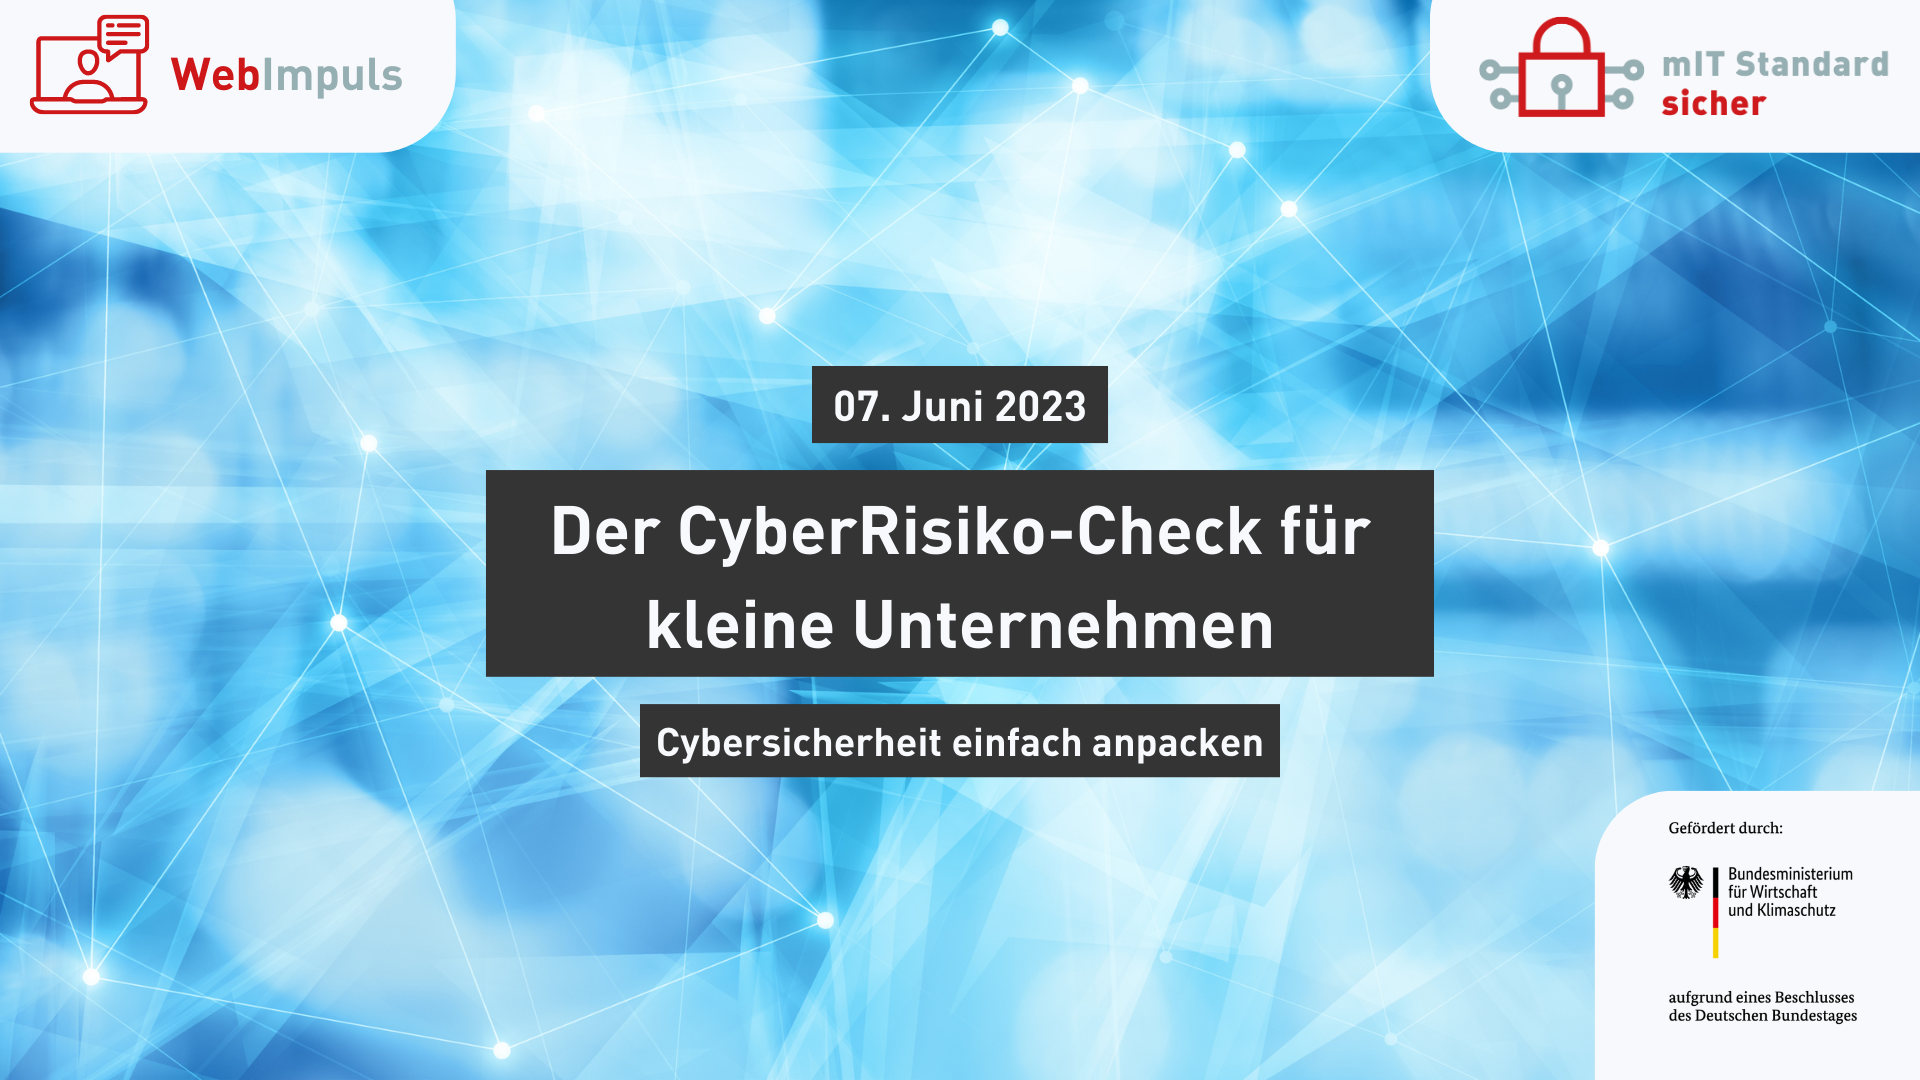 Der CyberRisiko-Check für kleine Unternehmen. So können Sie Cybersicherheit einfach anpacken.